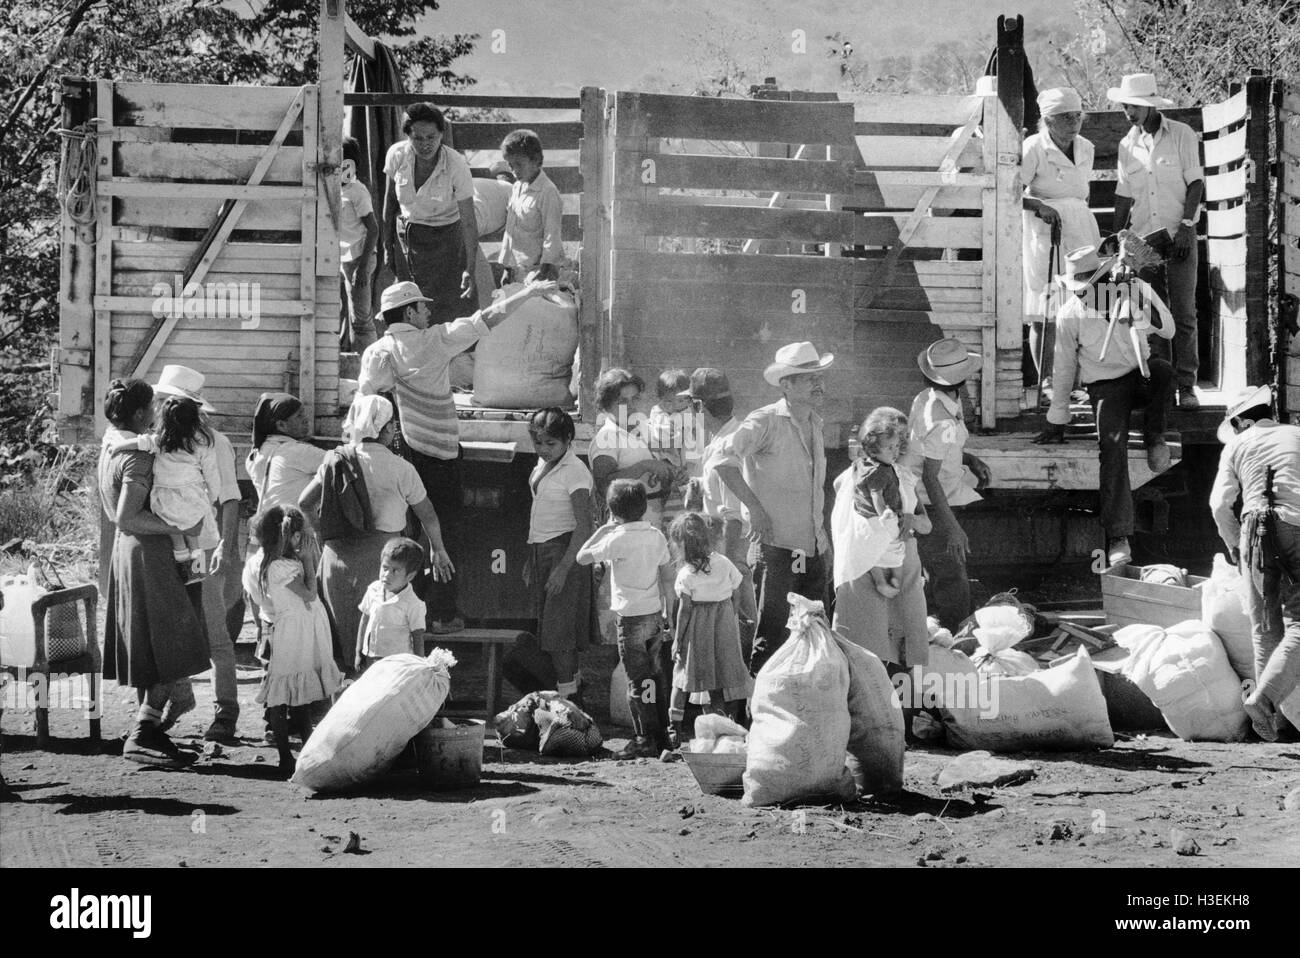 SAN SALVADOR, EL SALVADOR, FEB 1990 réfugiés salvadoriens à Accueil Retour province Morazan après neuf ans de l'autre côté de la frontière dans le camp de réfugiés à Colomoncagua hondurien. Banque D'Images